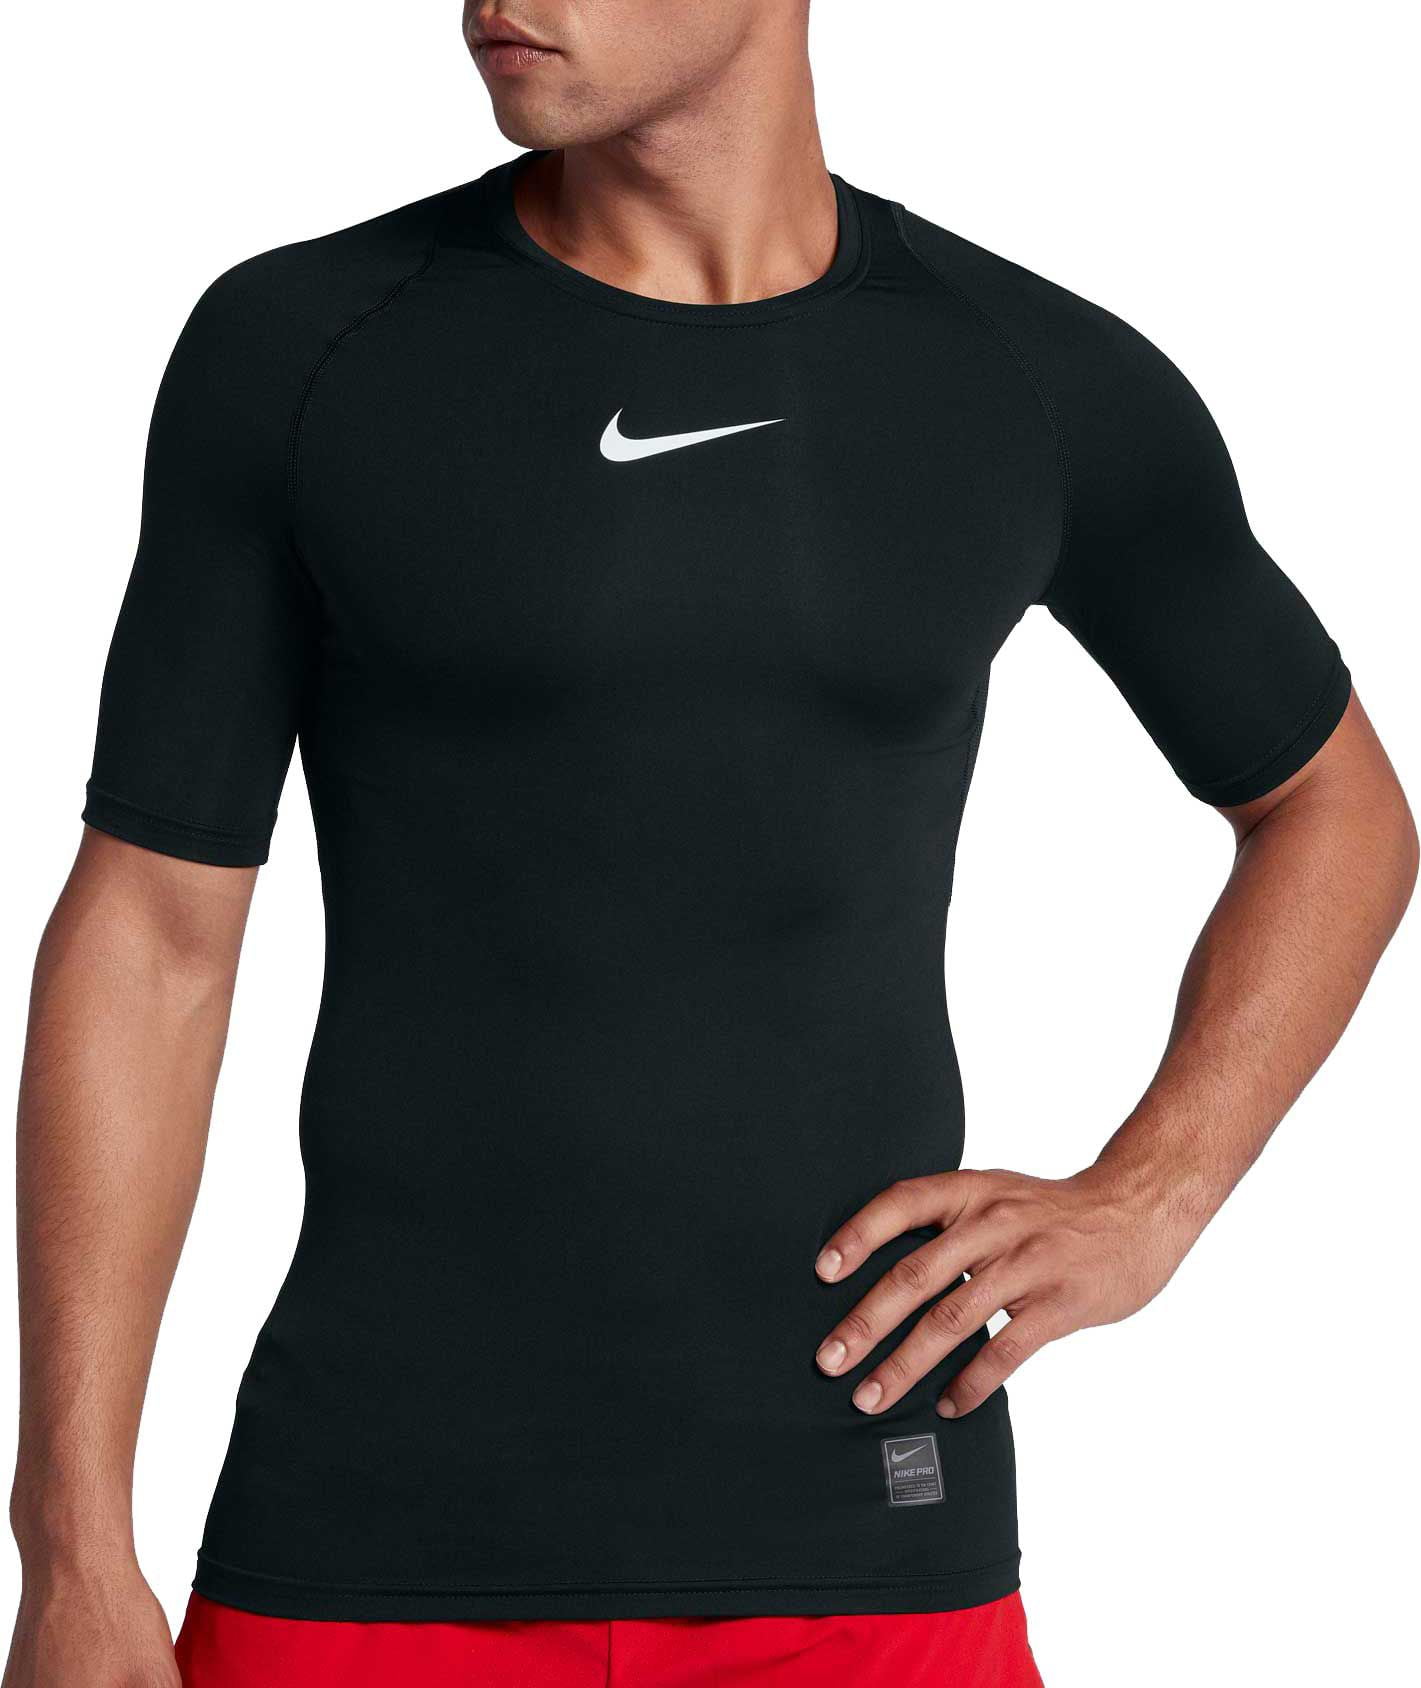 undtagelse Uganda isolation Nike Men's Pro Short Sleeve Compression Top - Walmart.com